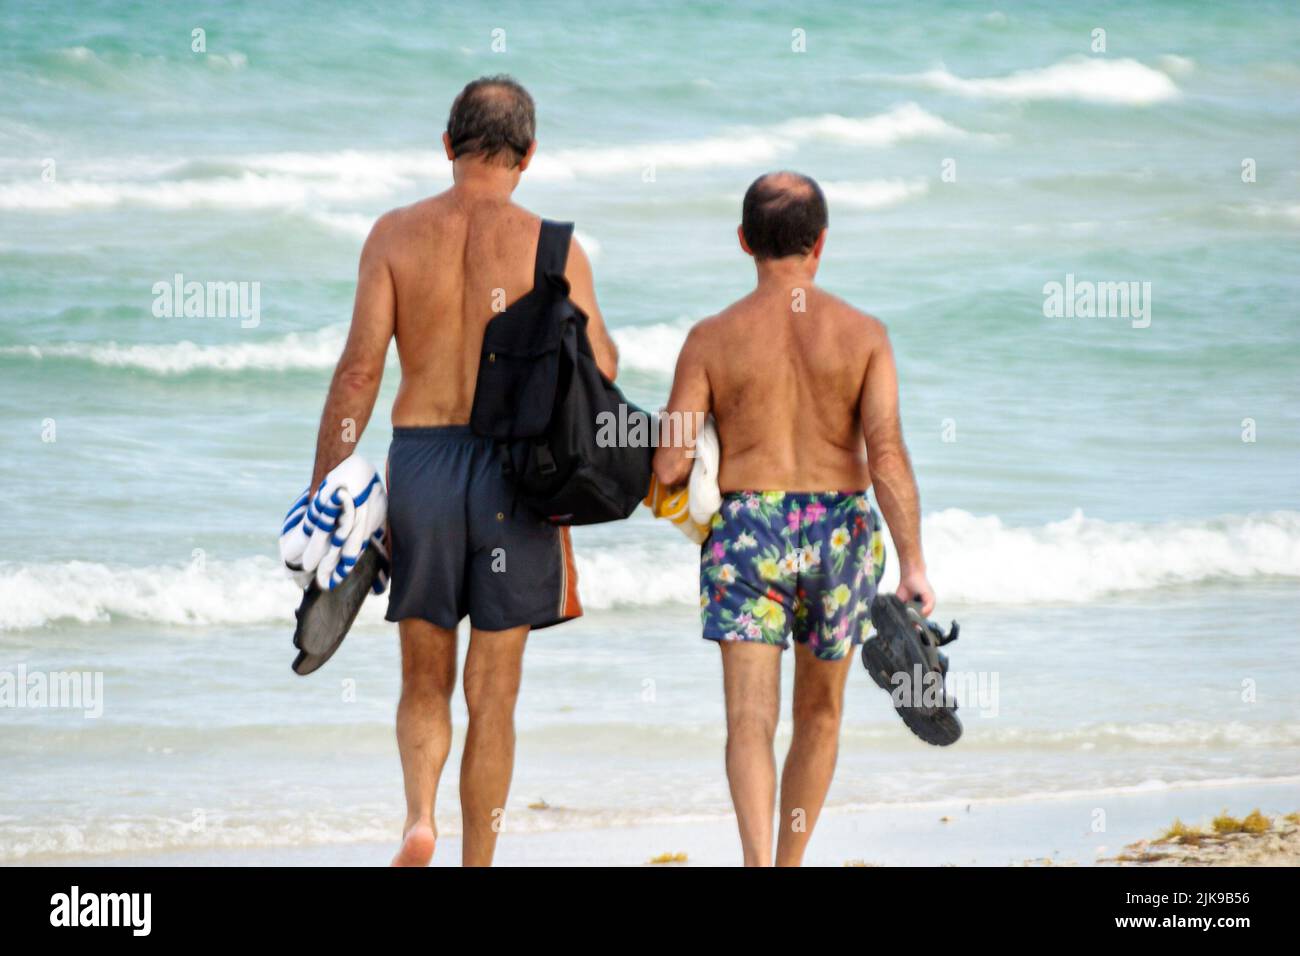 Miami Beach Florida,Atlantic Shore Ocean Shoreline Coast litorale spiaggia, due uomini 2 uomini uomo spiaggia pettinatori amici camminare indossando costumi da bagno Foto Stock